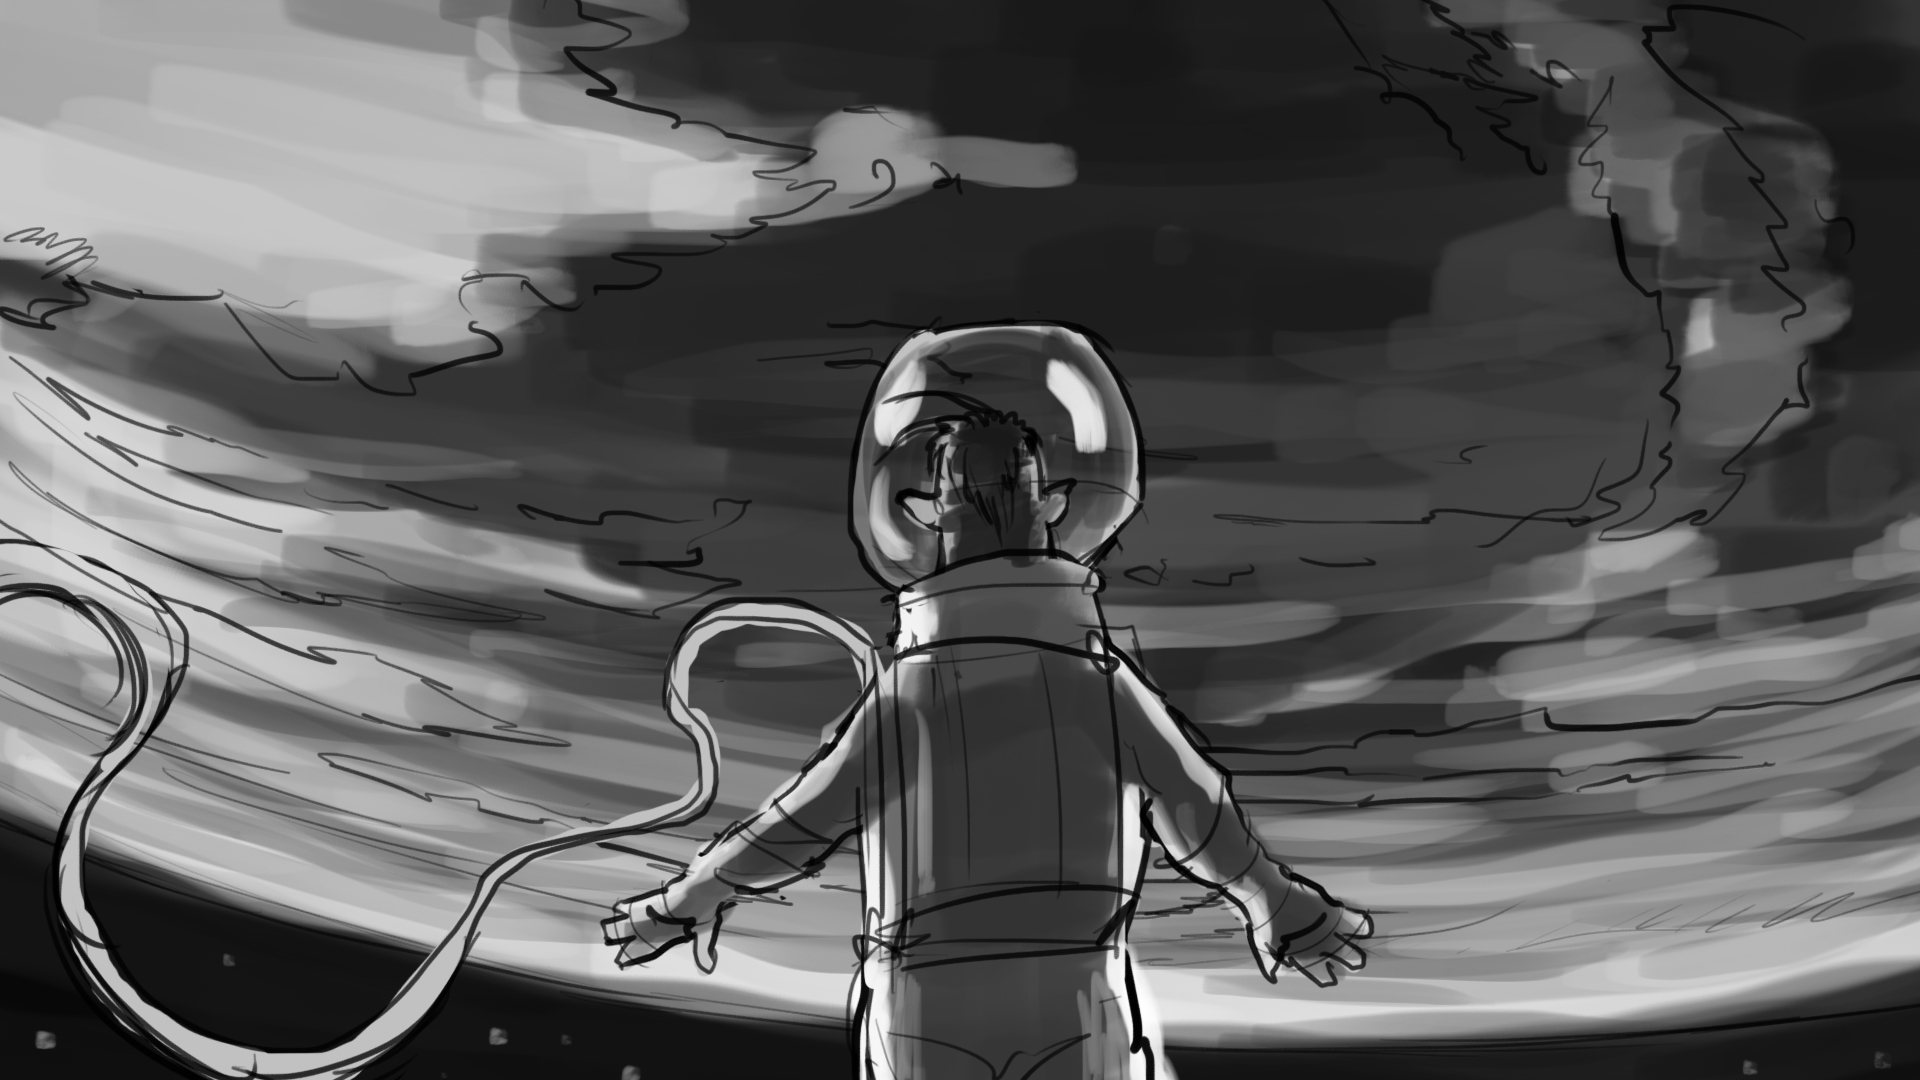 Rocket_Man_Storyboard_Artboard 8.jpg